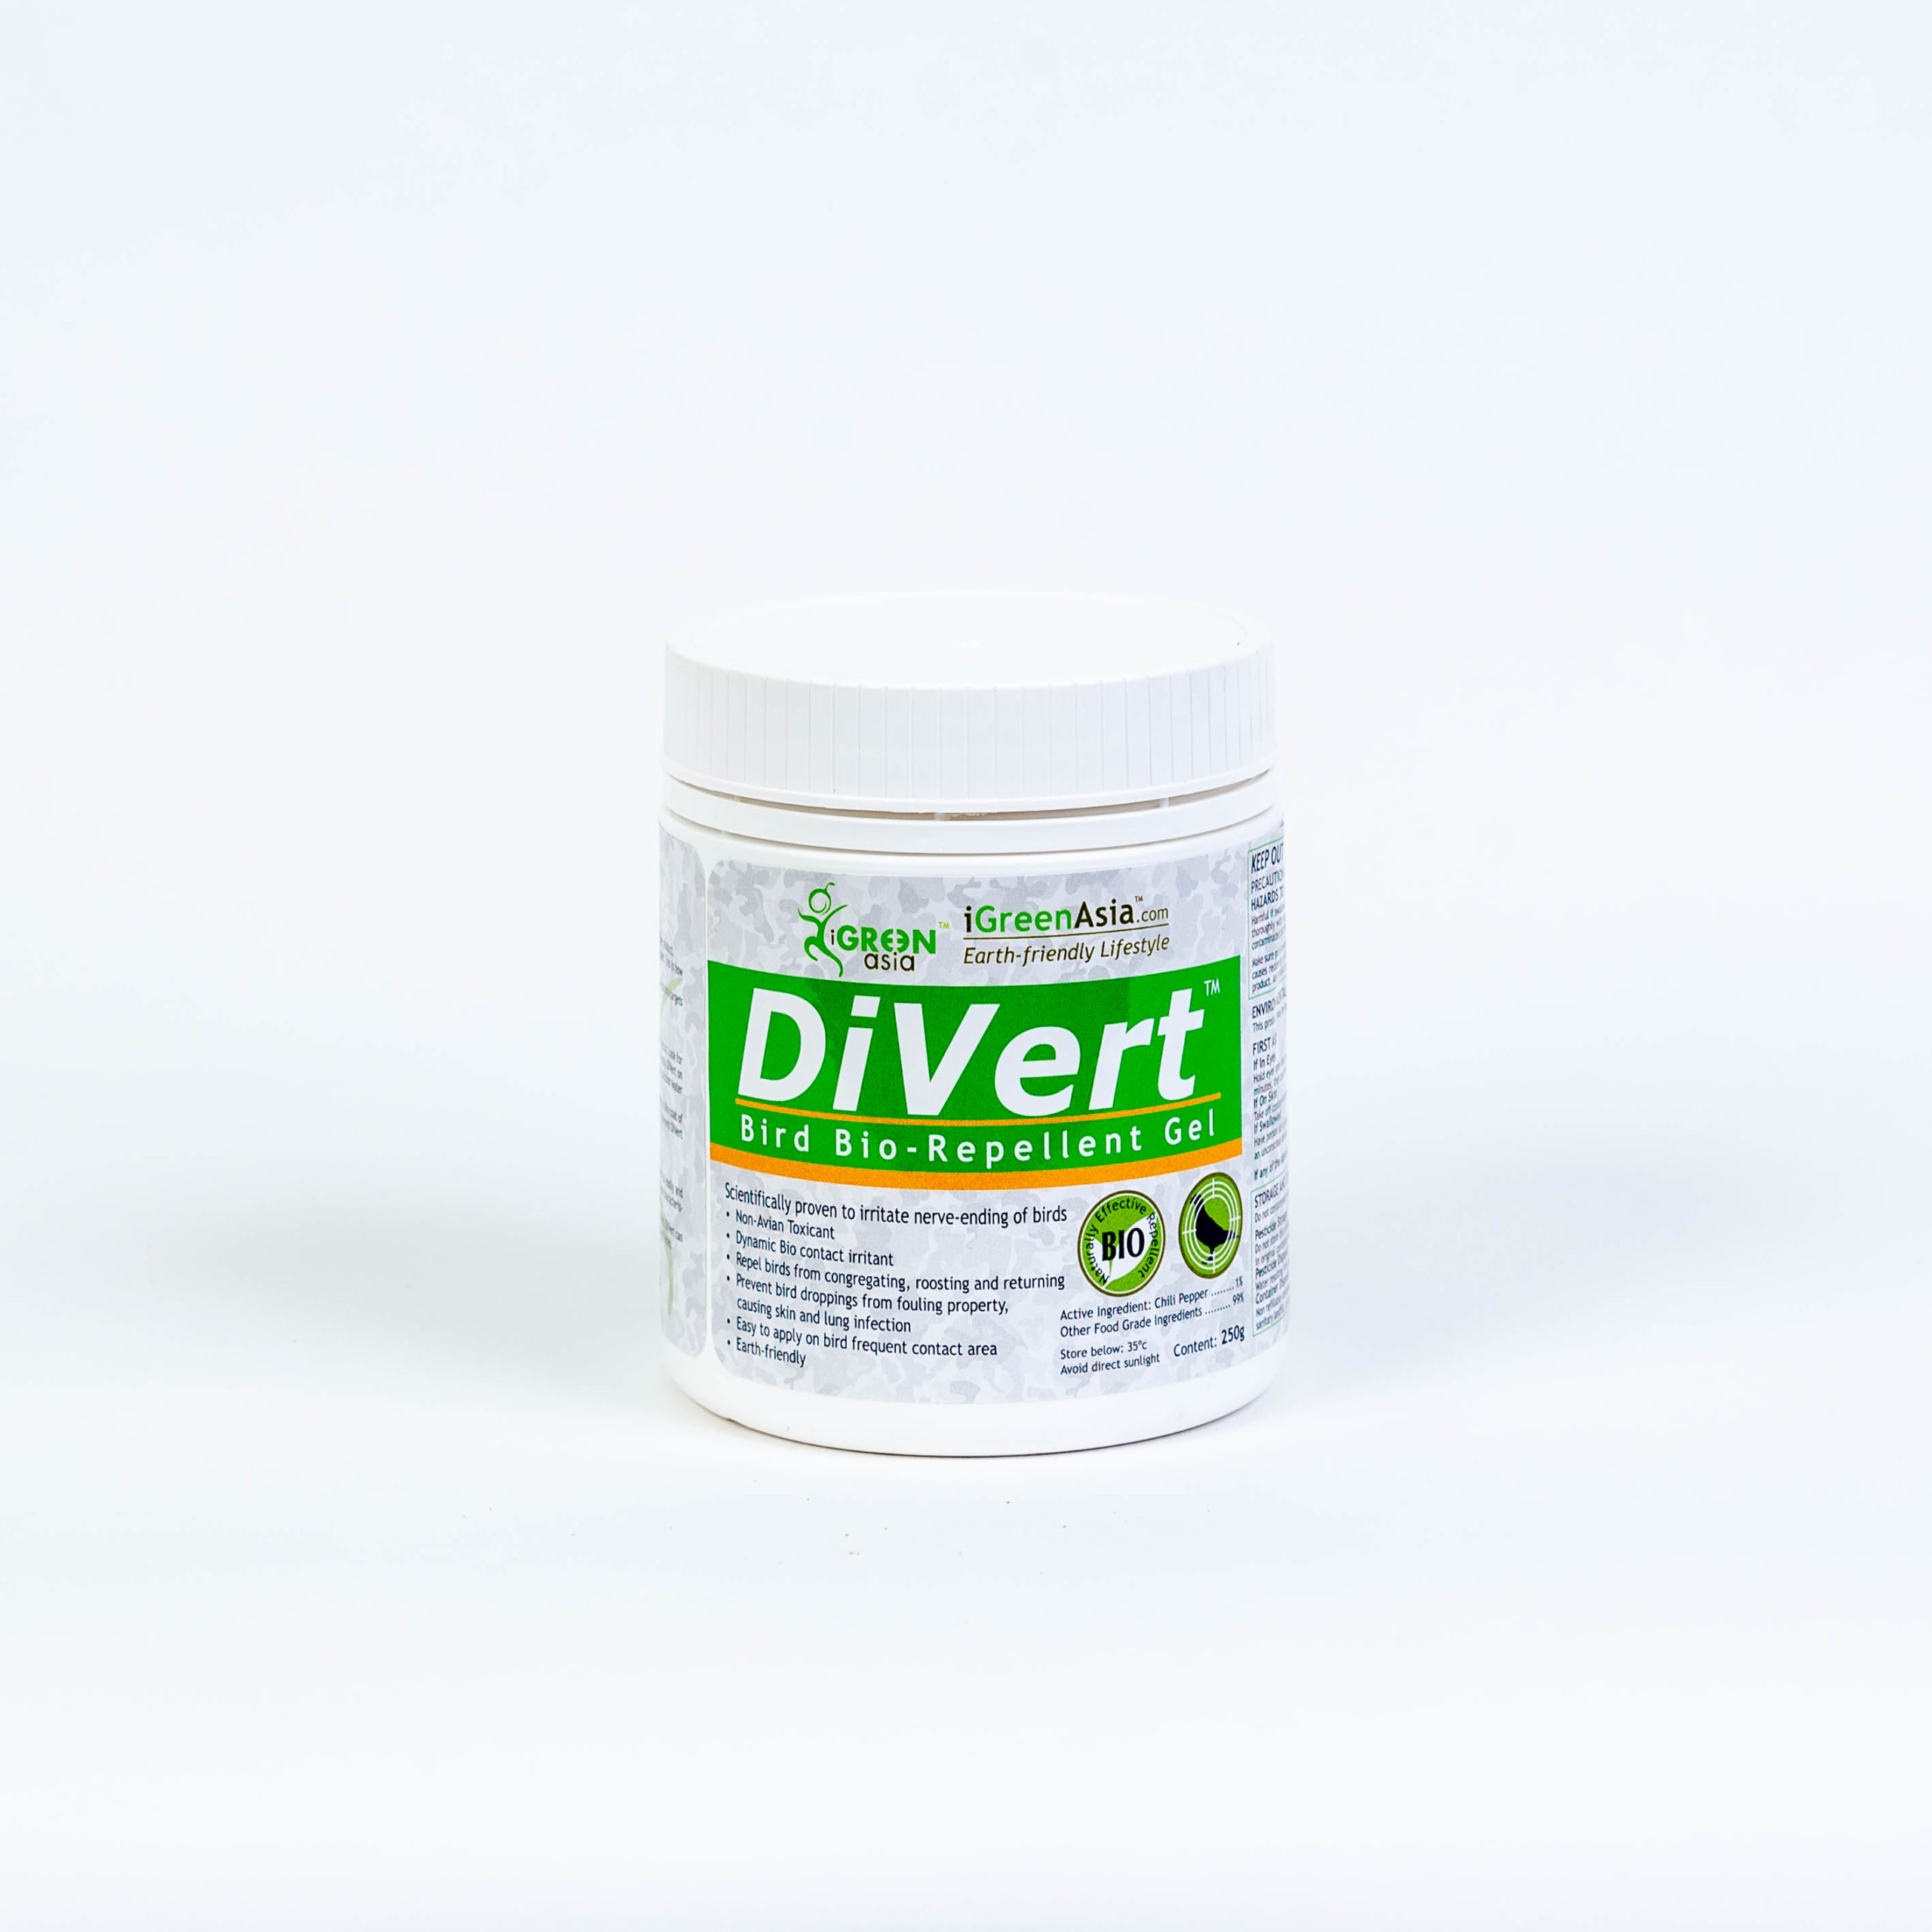 DiVert Bird Bio-Repellent Gel 250g